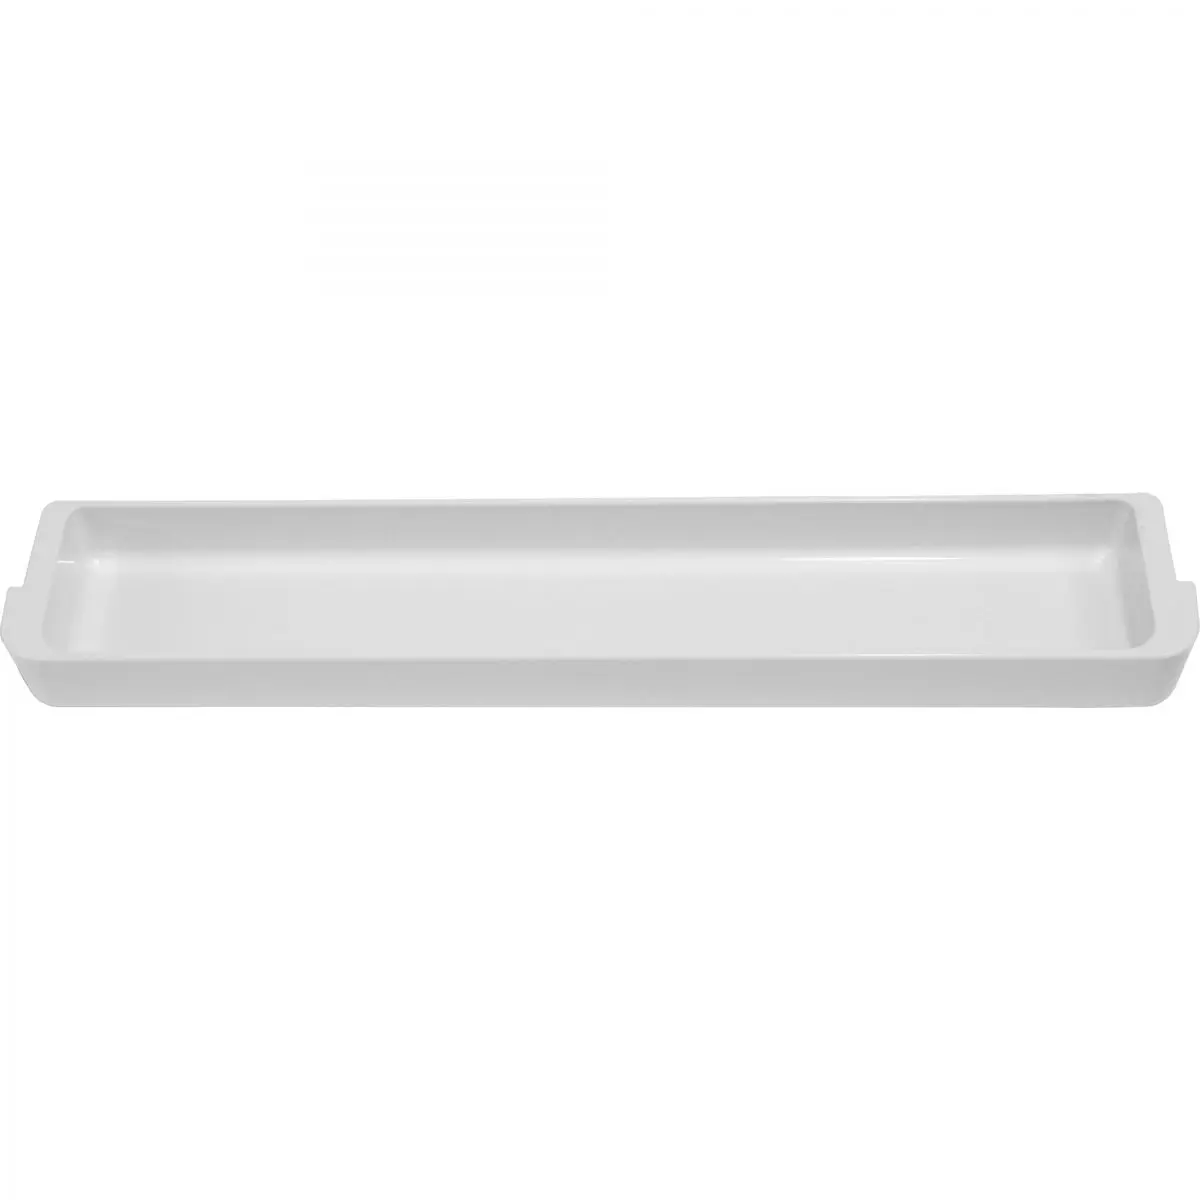 Suport de podea deasupra, alb, L 37,5 x A 6,5 x H 3 cm pentru frigider CoolMatic CRX 80